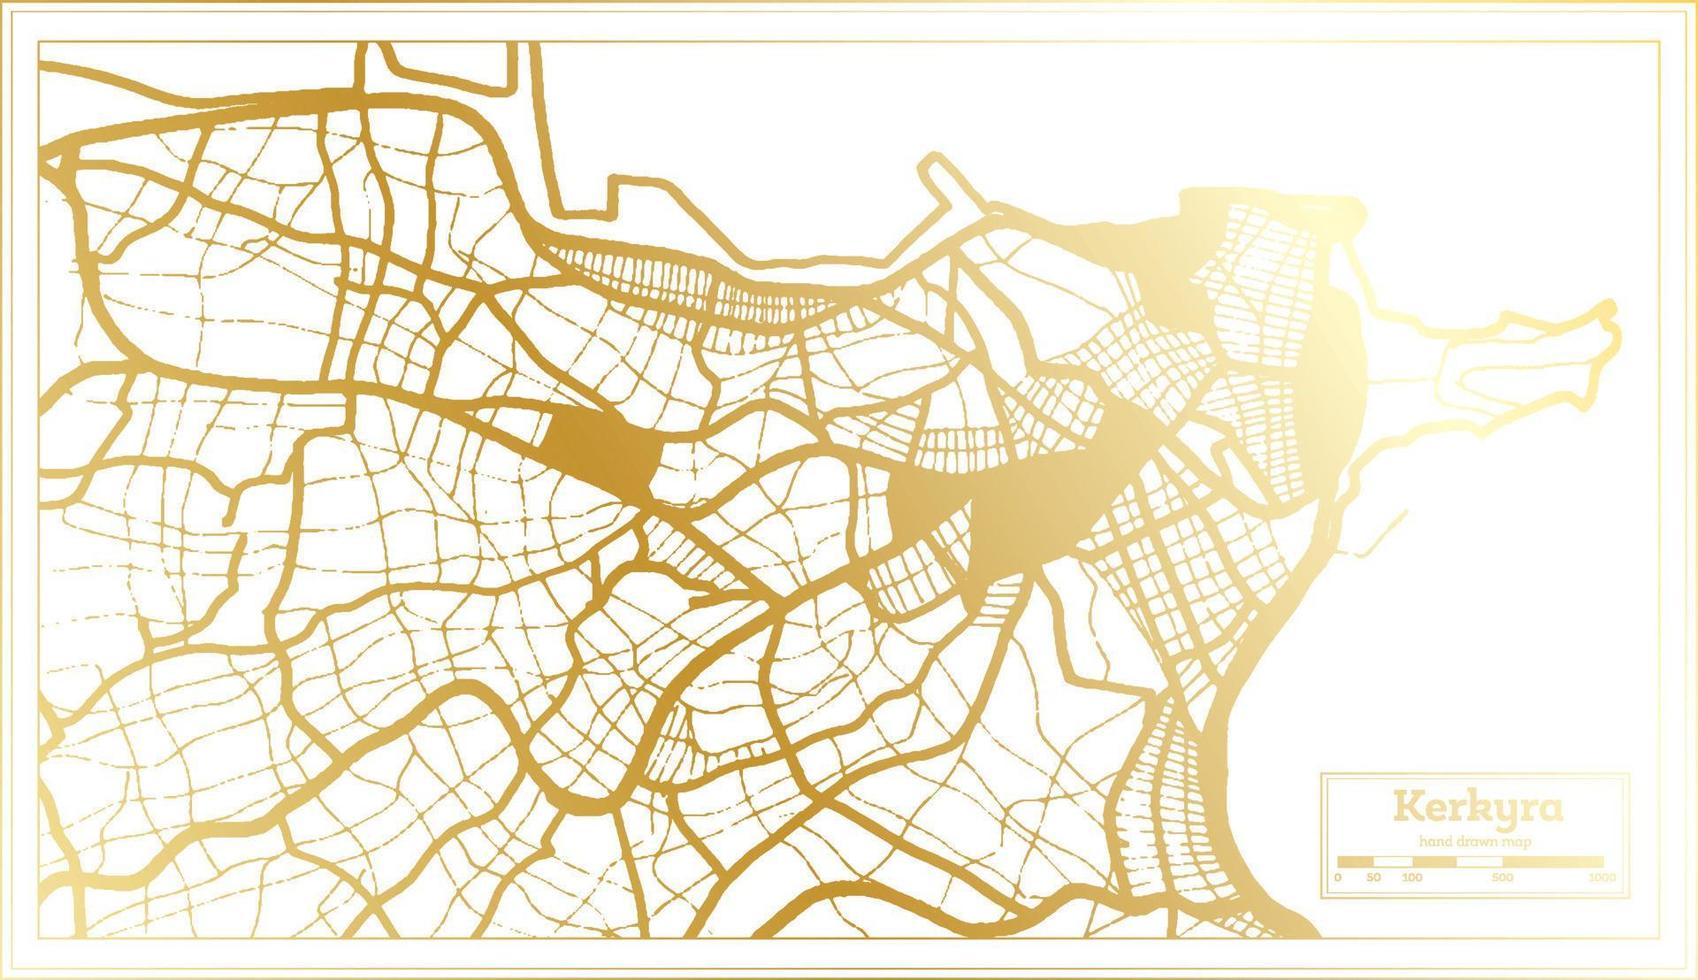 mapa da cidade de kerkyra grécia em estilo retrô na cor dourada. mapa de contorno. vetor